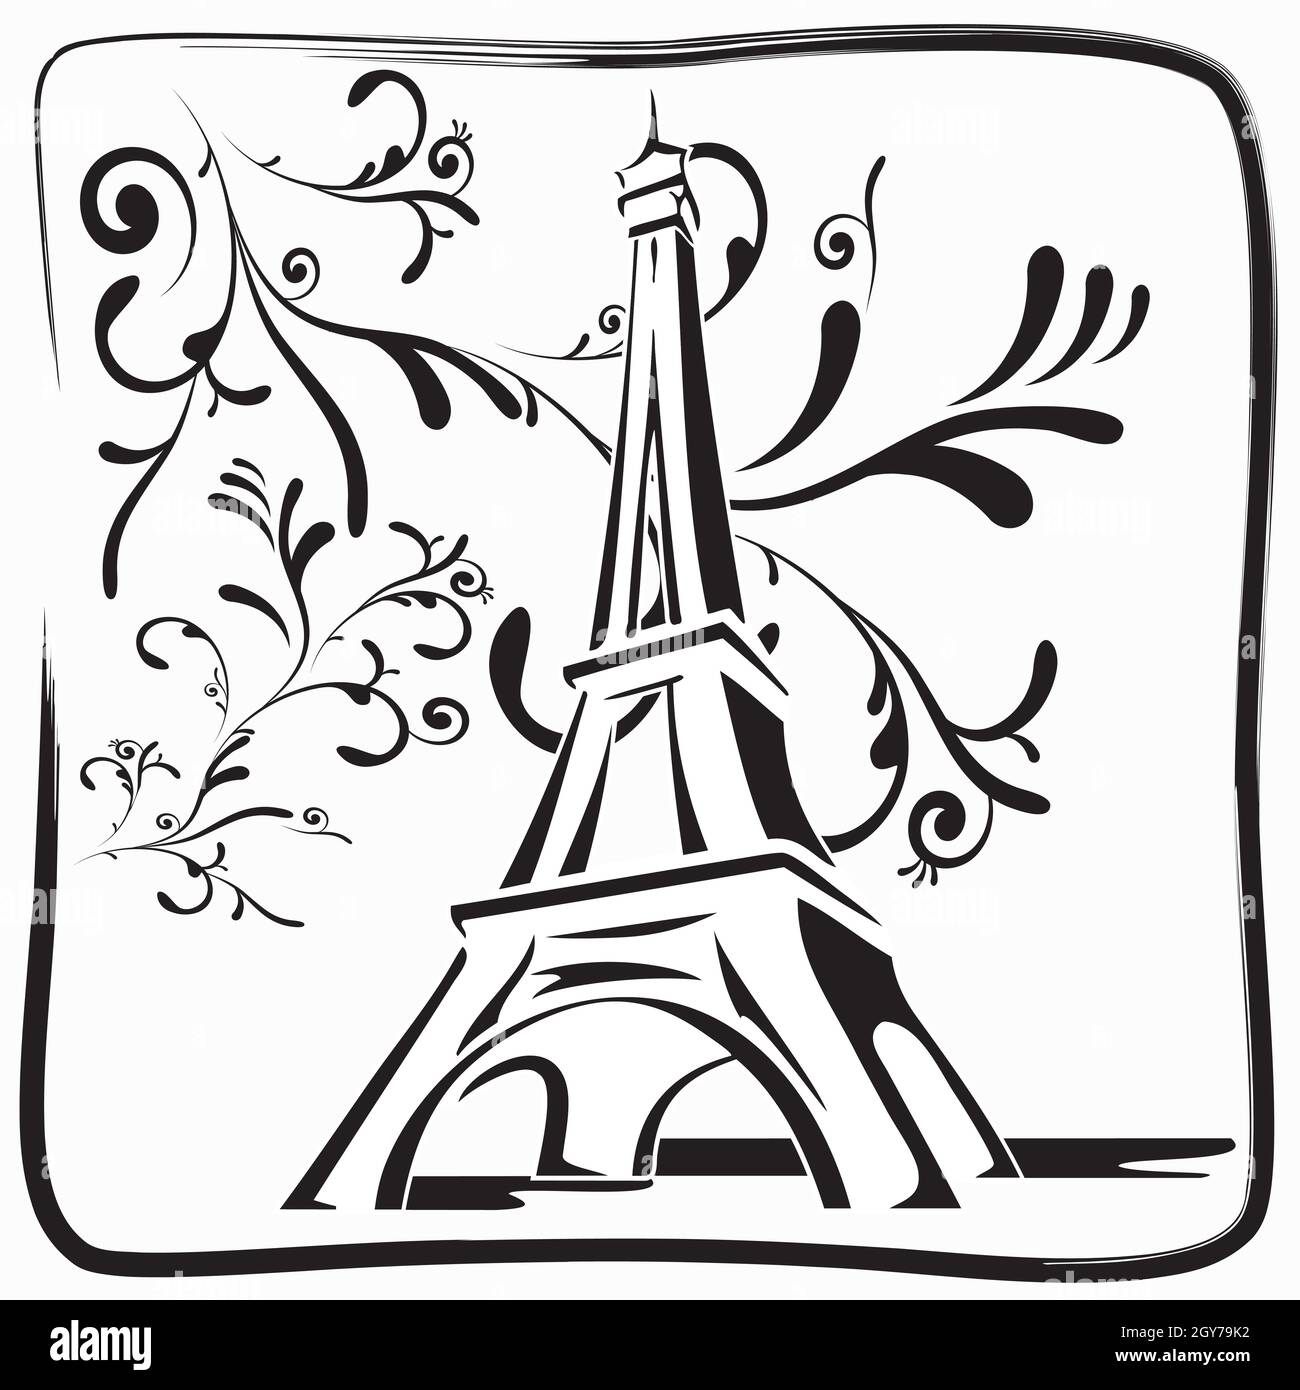 Illustration dessin de la Tour Eiffel à Paris avec feuillages et cadre en noir et blanc, dessin à la main Illustration de Vecteur